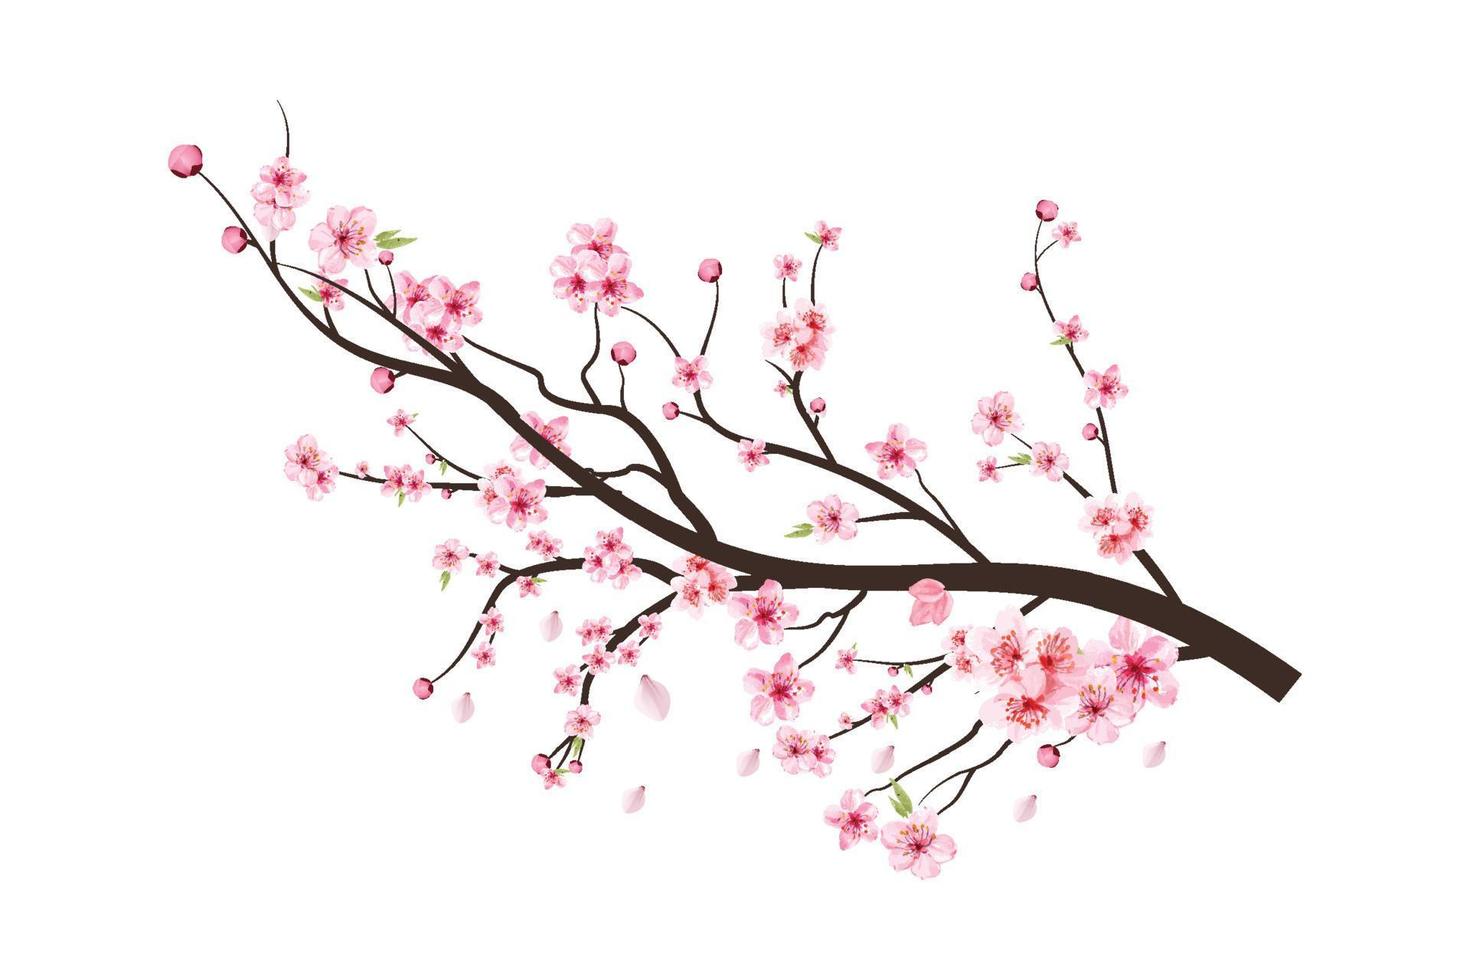 rama de un árbol de cerezo en flor con la difusión de la flor rosa. rama